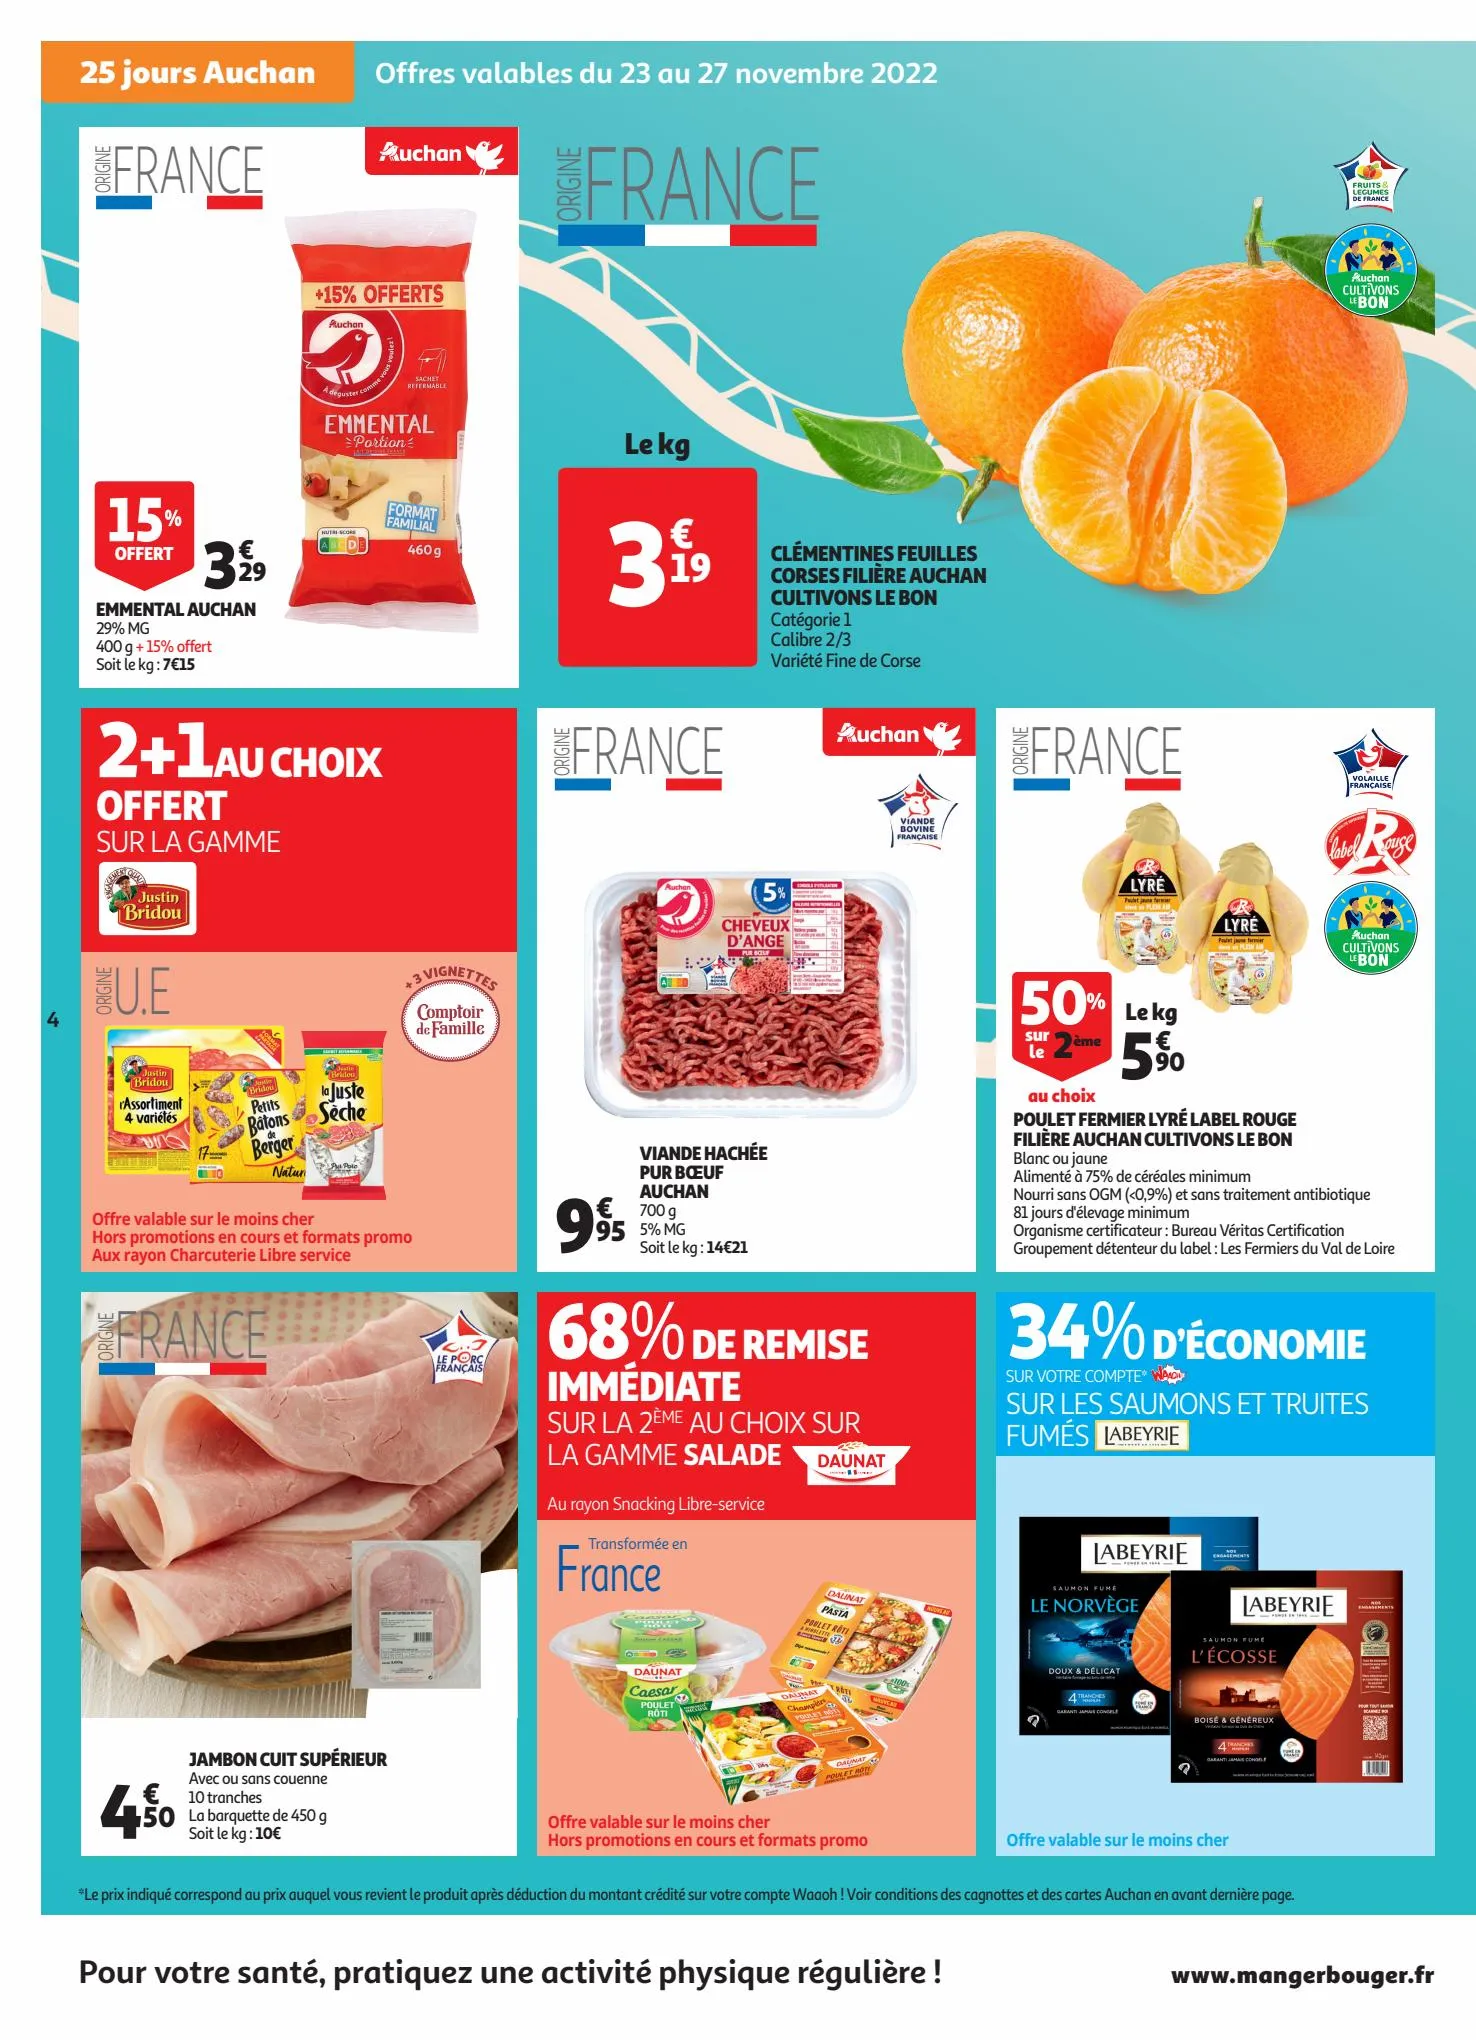 Catalogue 25 jours Auchan, page 00004